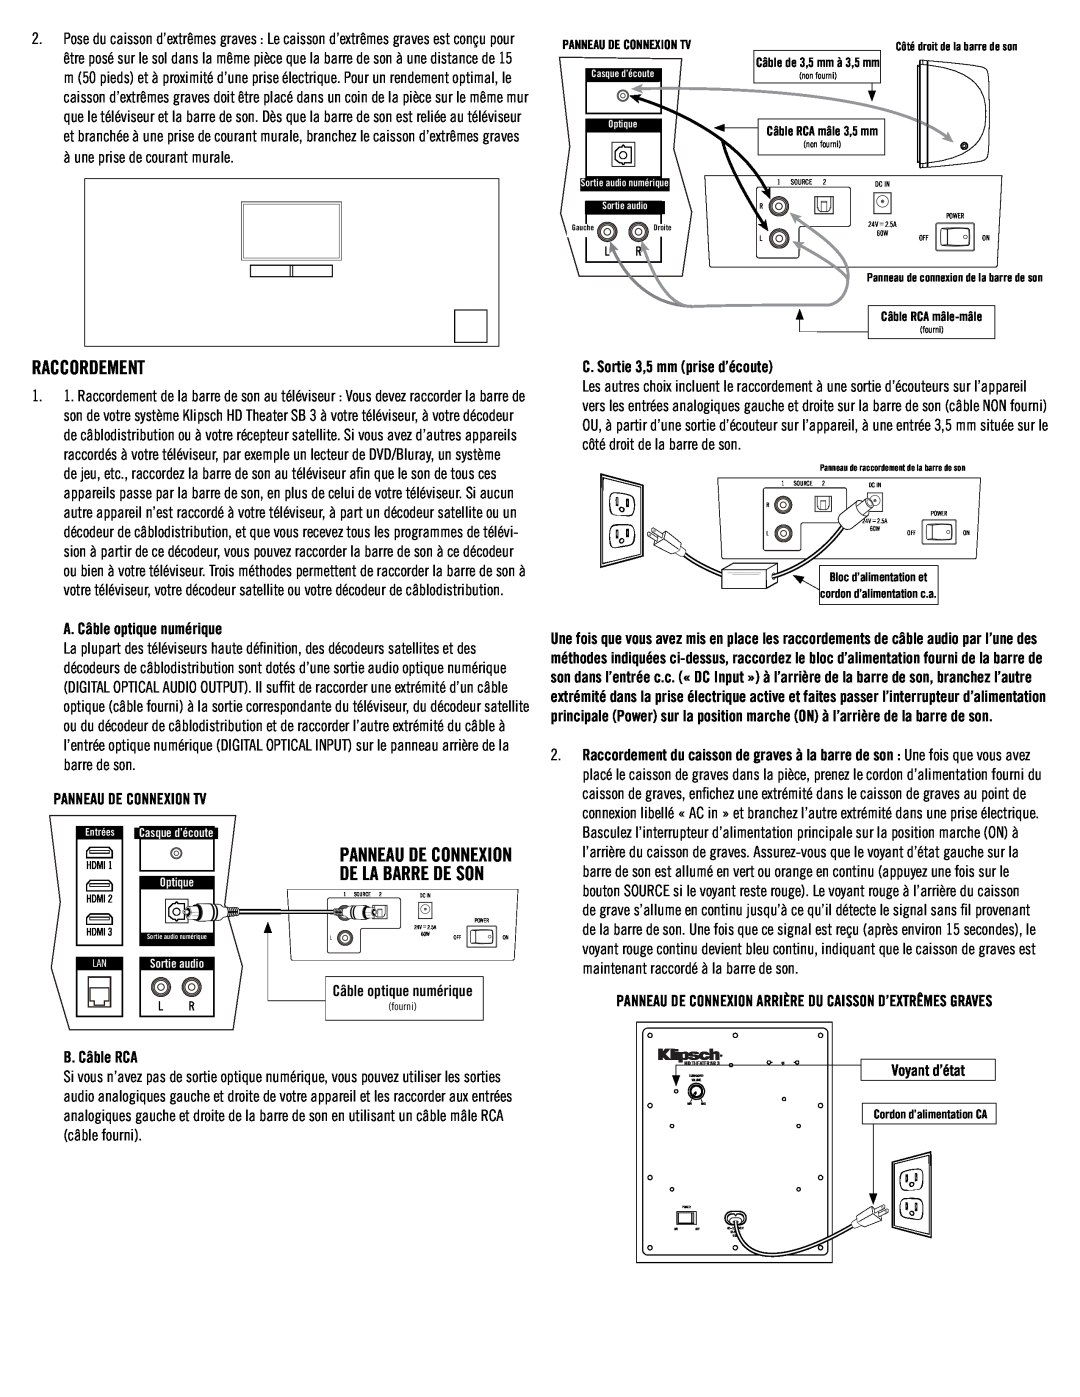 Klipsch SB3 owner manual A. Câble optique numérique, Panneau de connexion TV, C. Sortie 3,5 mm prise d’écoute, B. Câble RCA 